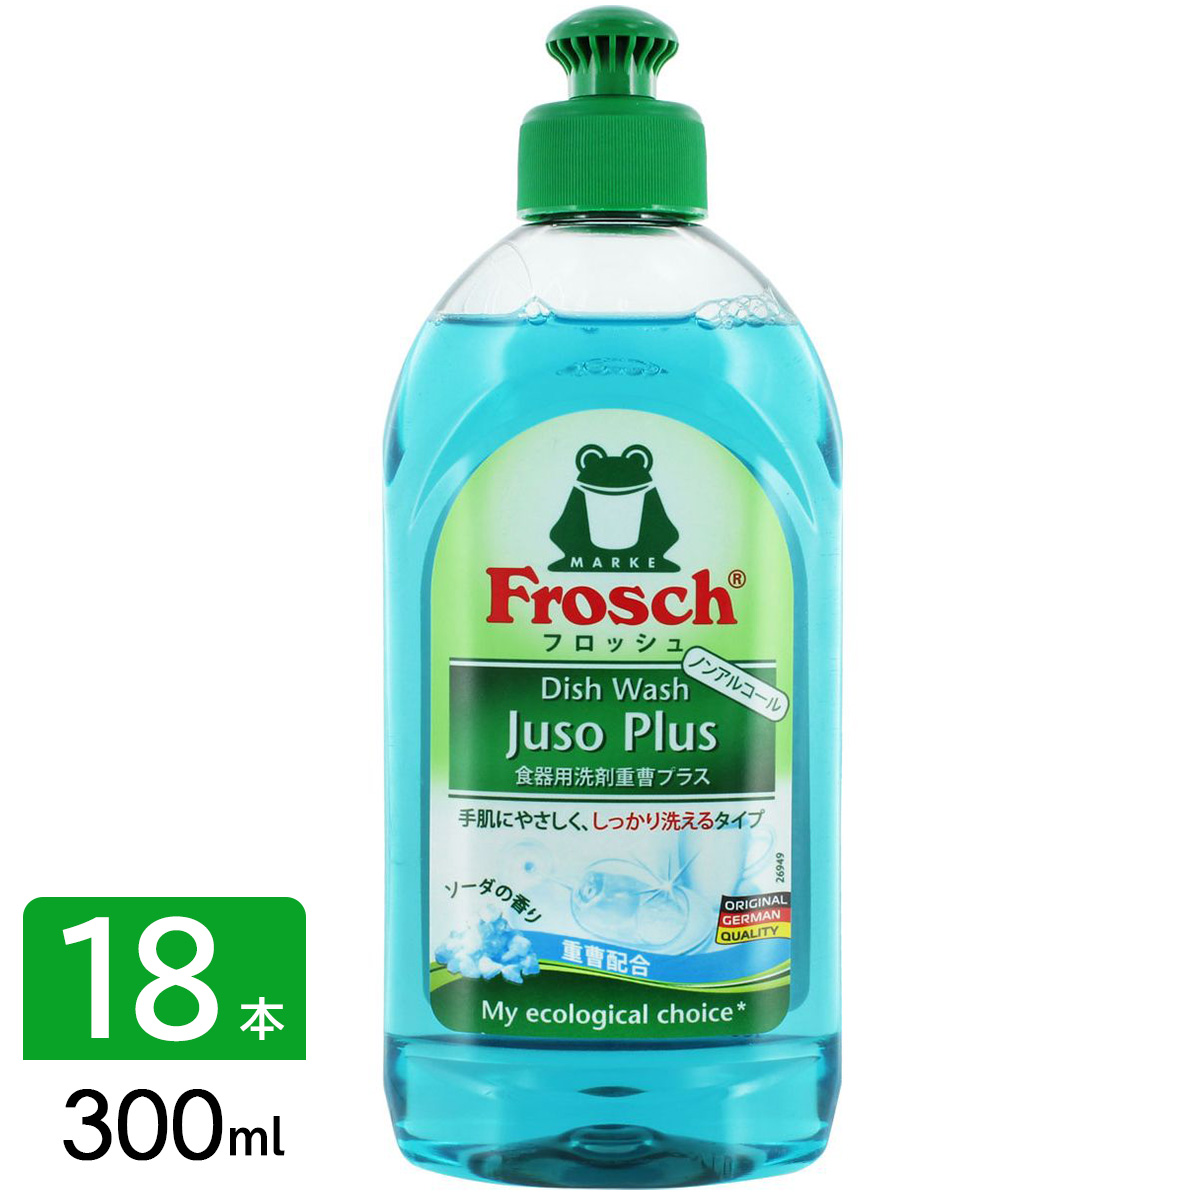 フロッシュ frosch 食器用洗剤 台所用洗剤 重曹プラス 本体 300ml×18本